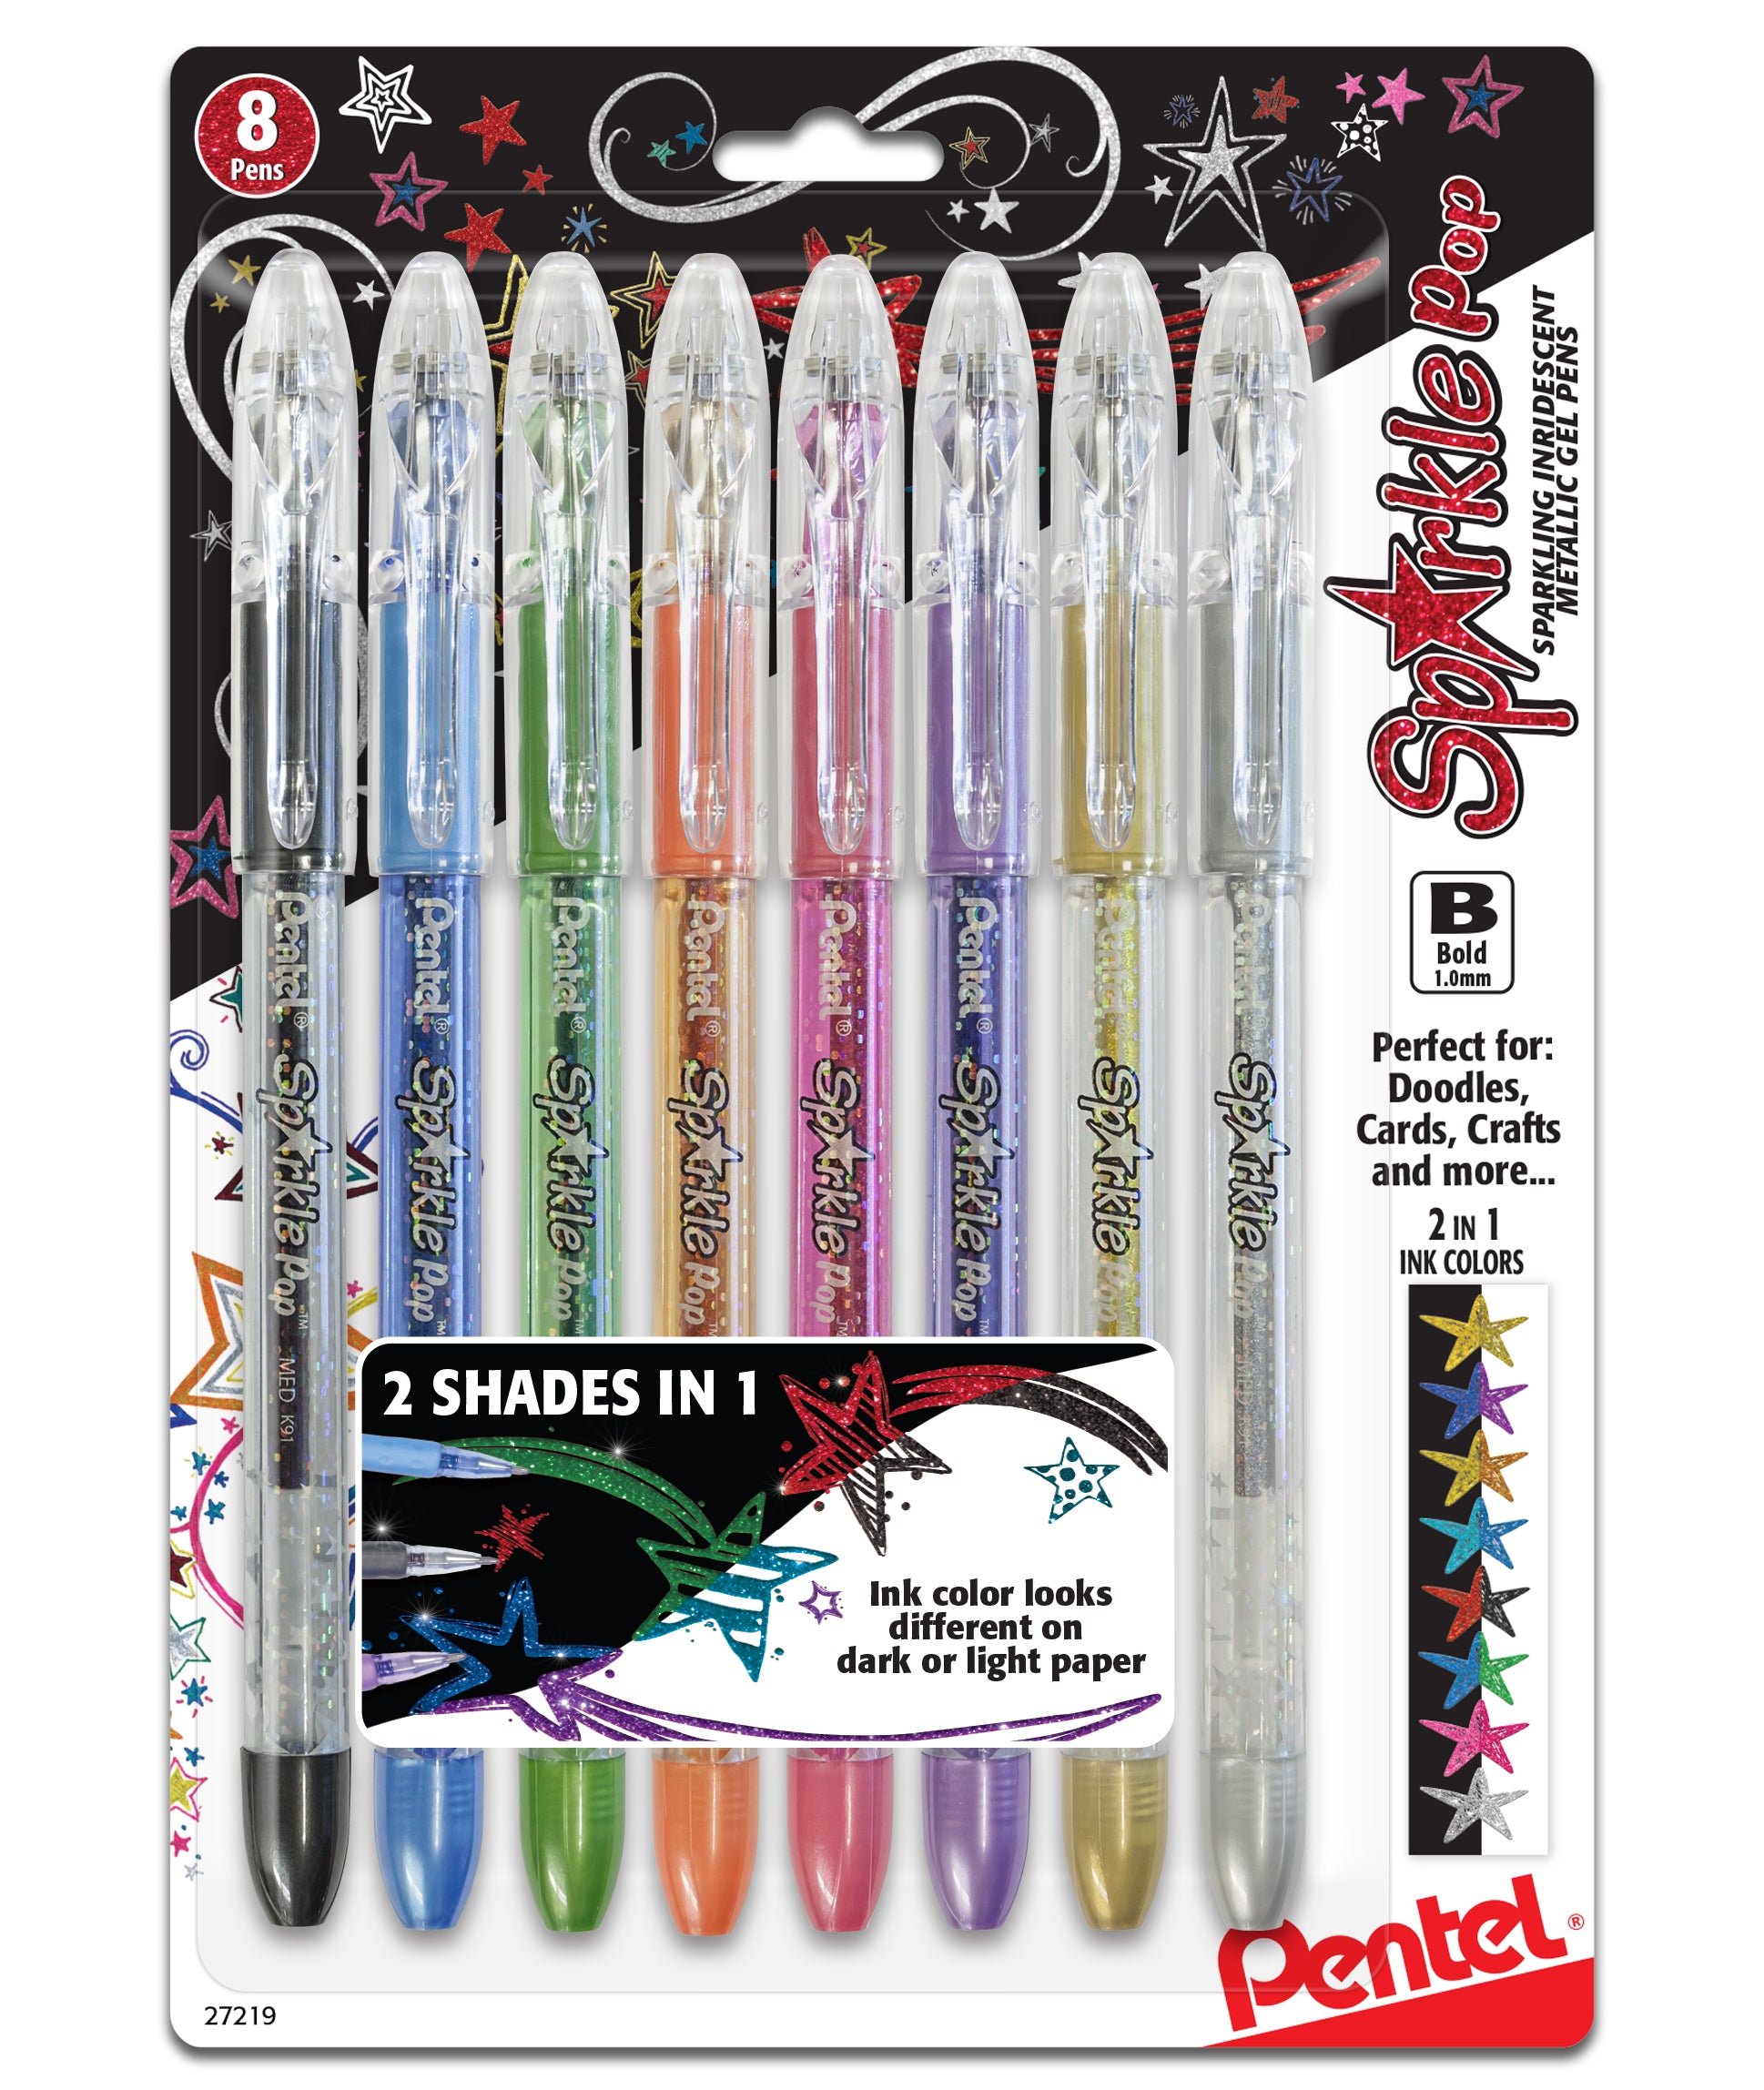 Pentel Sparkle Pop Pen – MUSEjar